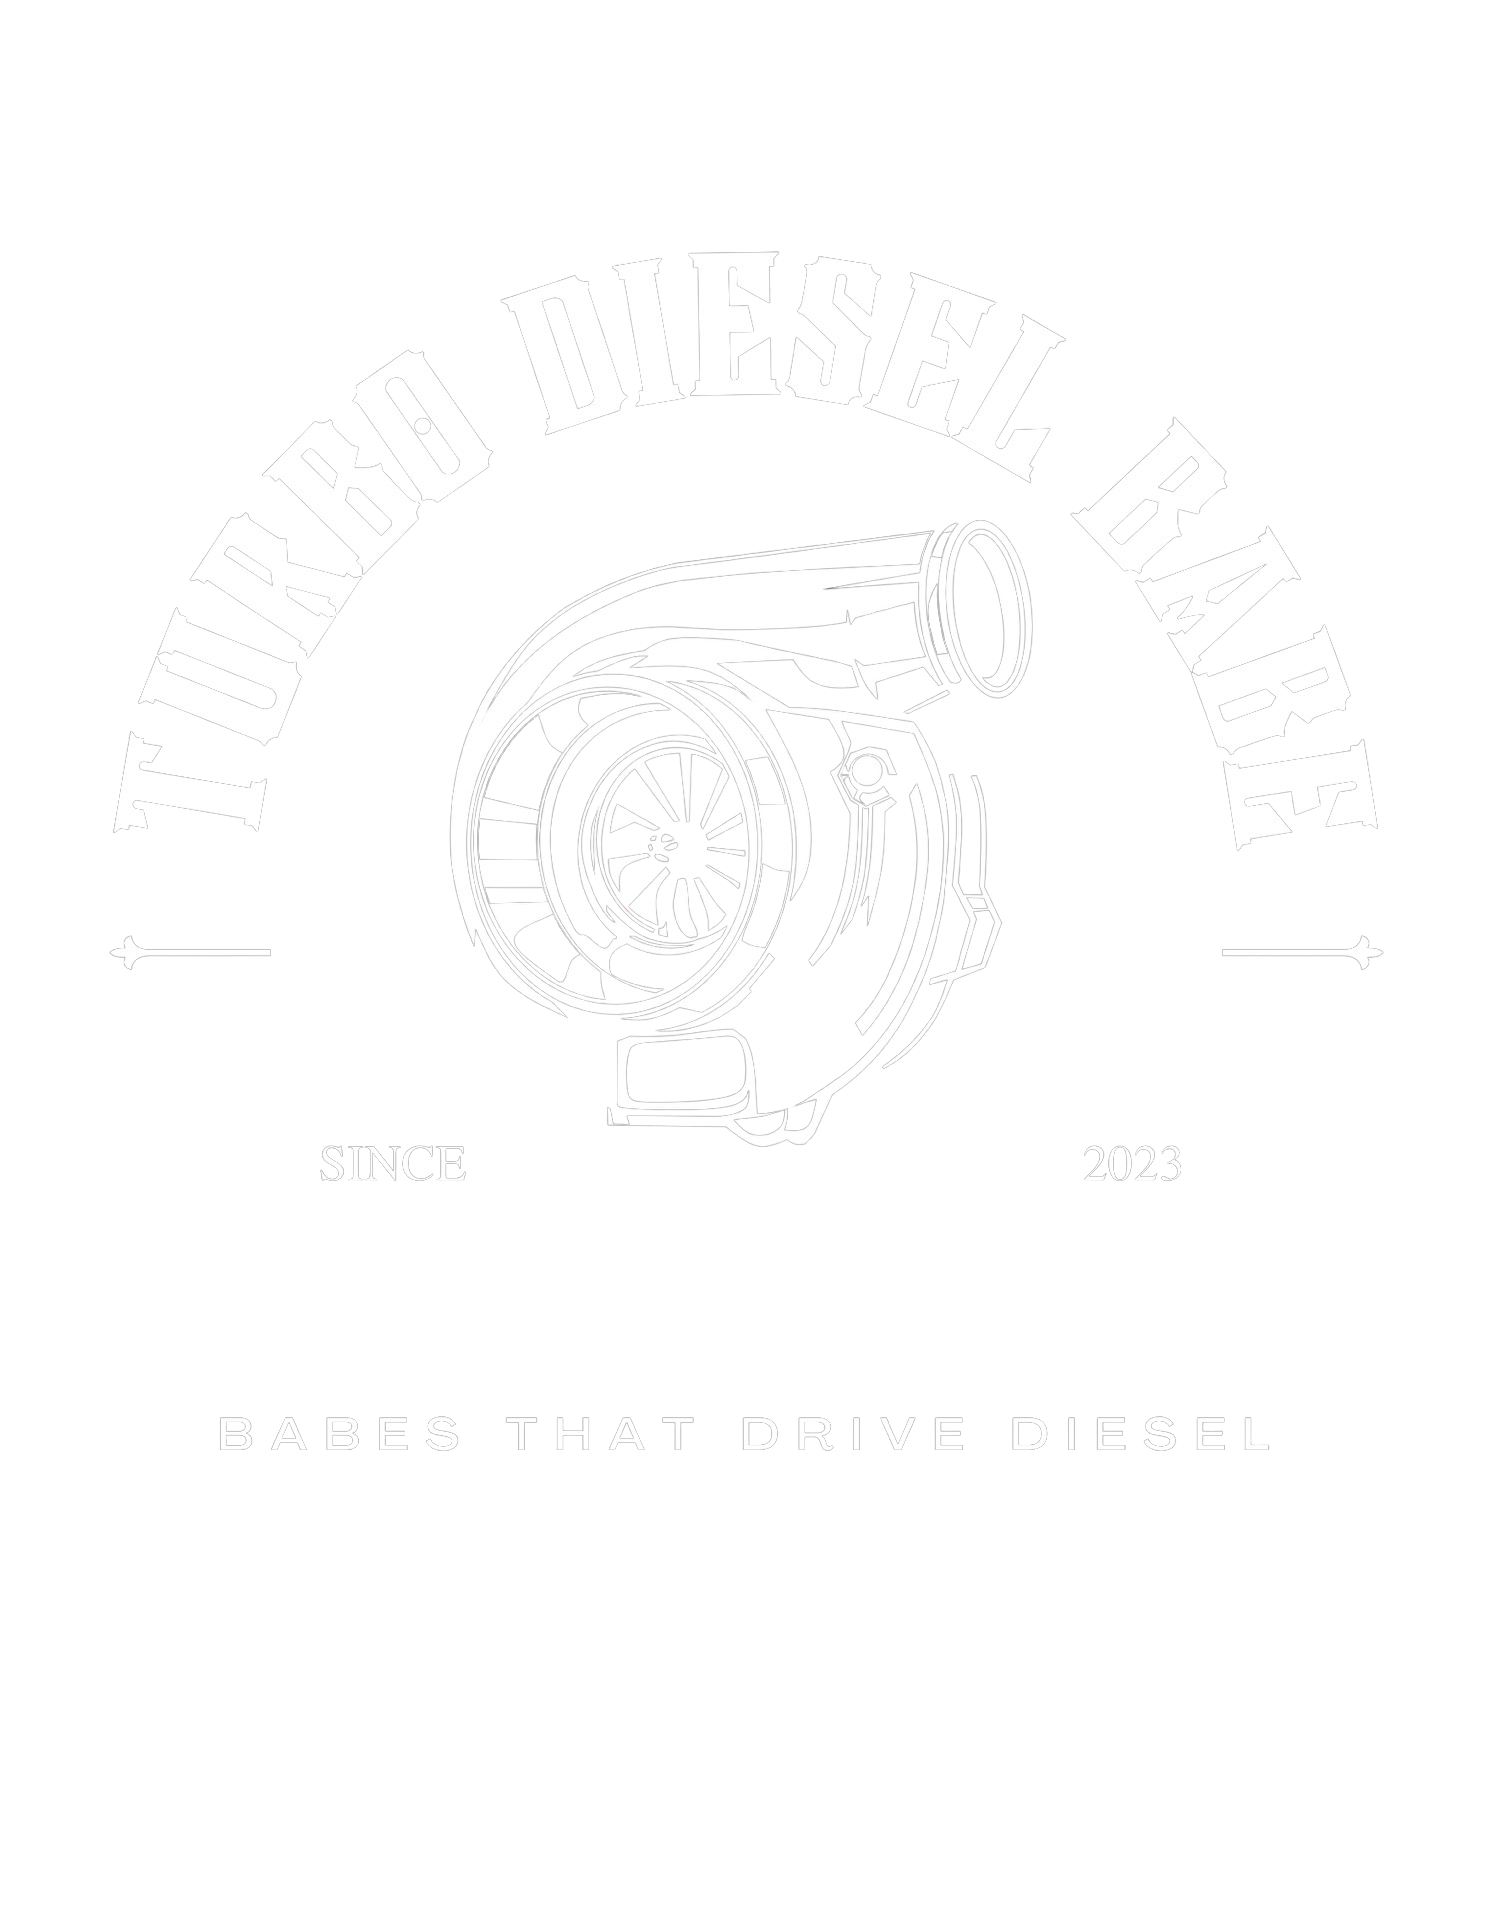 Turbo Diesel Babes